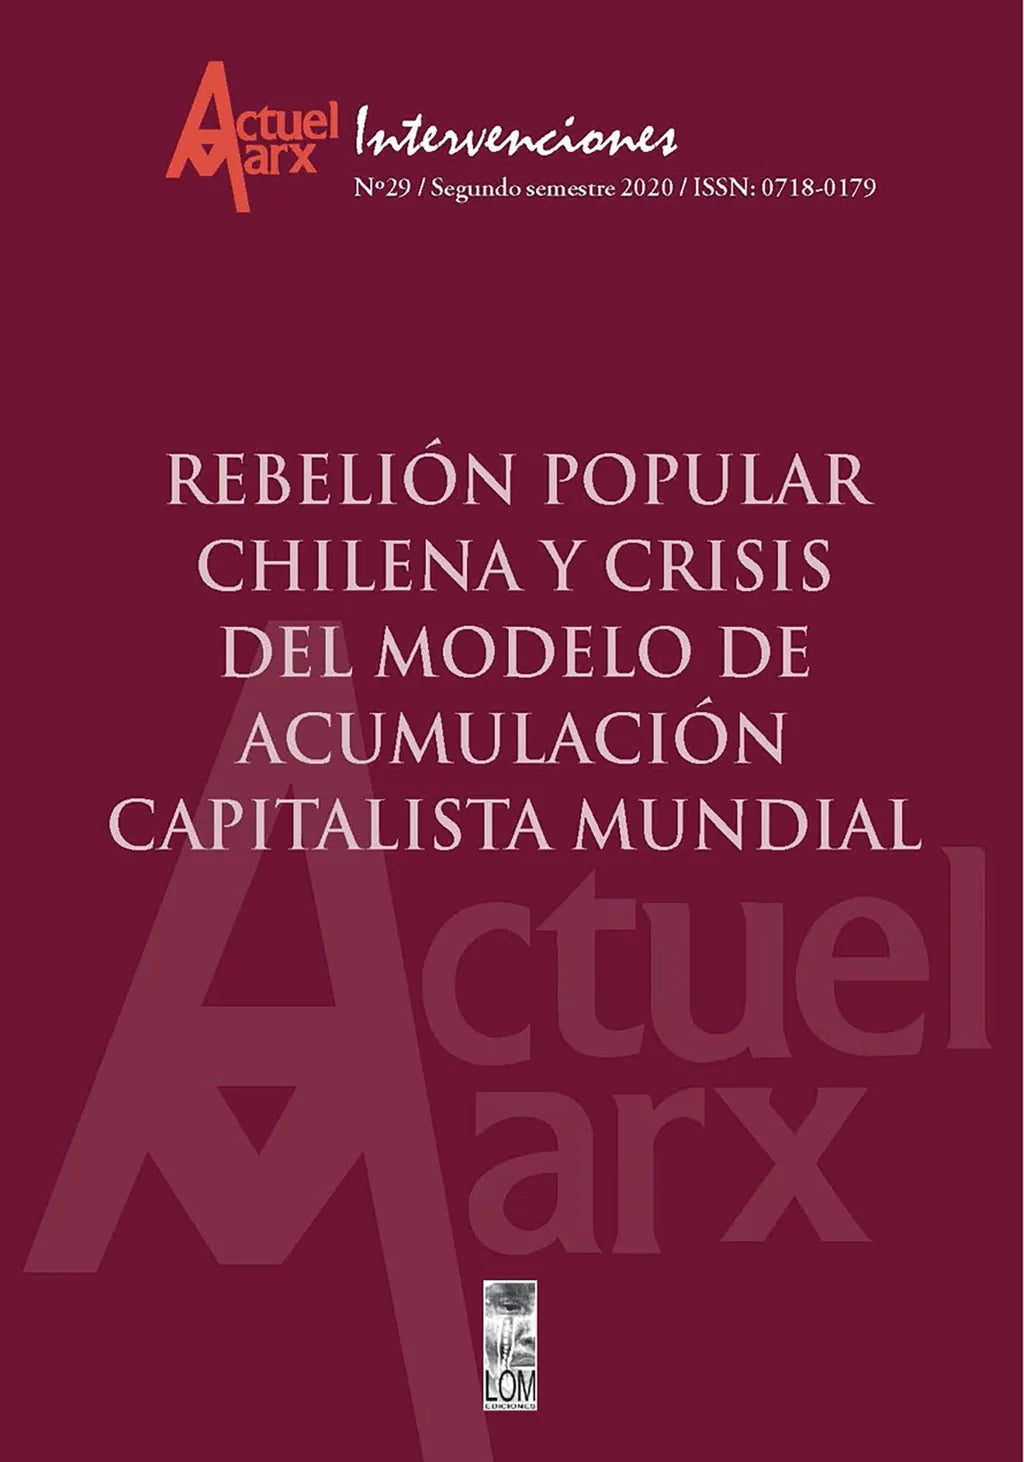 Actuel Marx N°29: Rebelión popular chilena y crisis del modelo de acum –  Loja Skeelo